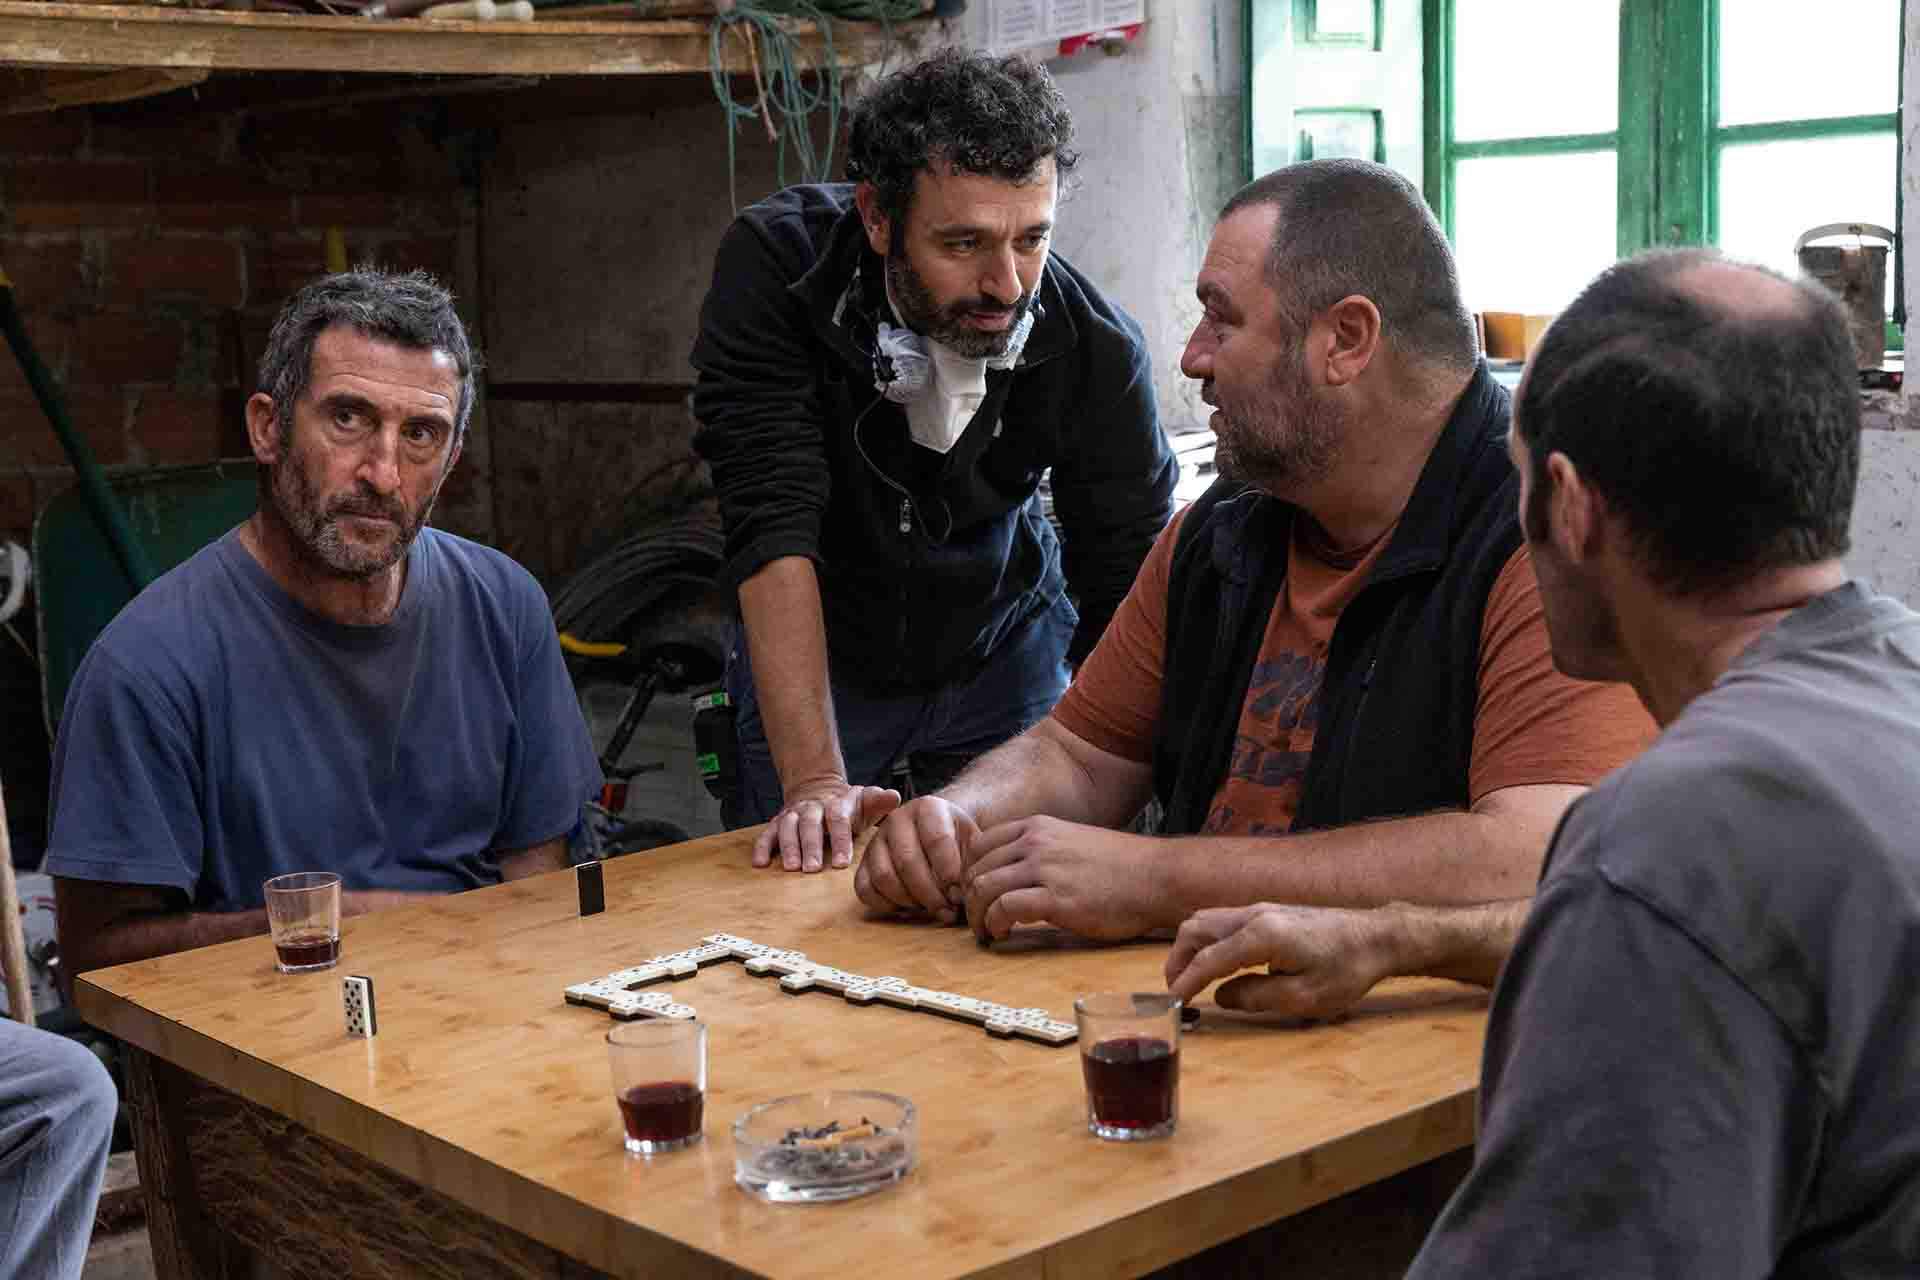 Rodaje de 'As bestas' de izquierda a derecha: Luis Zahera (actor), Denis Ménochet (actor), Rodríguez Sorogoyen (director), Diego Anido (actor) / Foto: Lucia Faraig